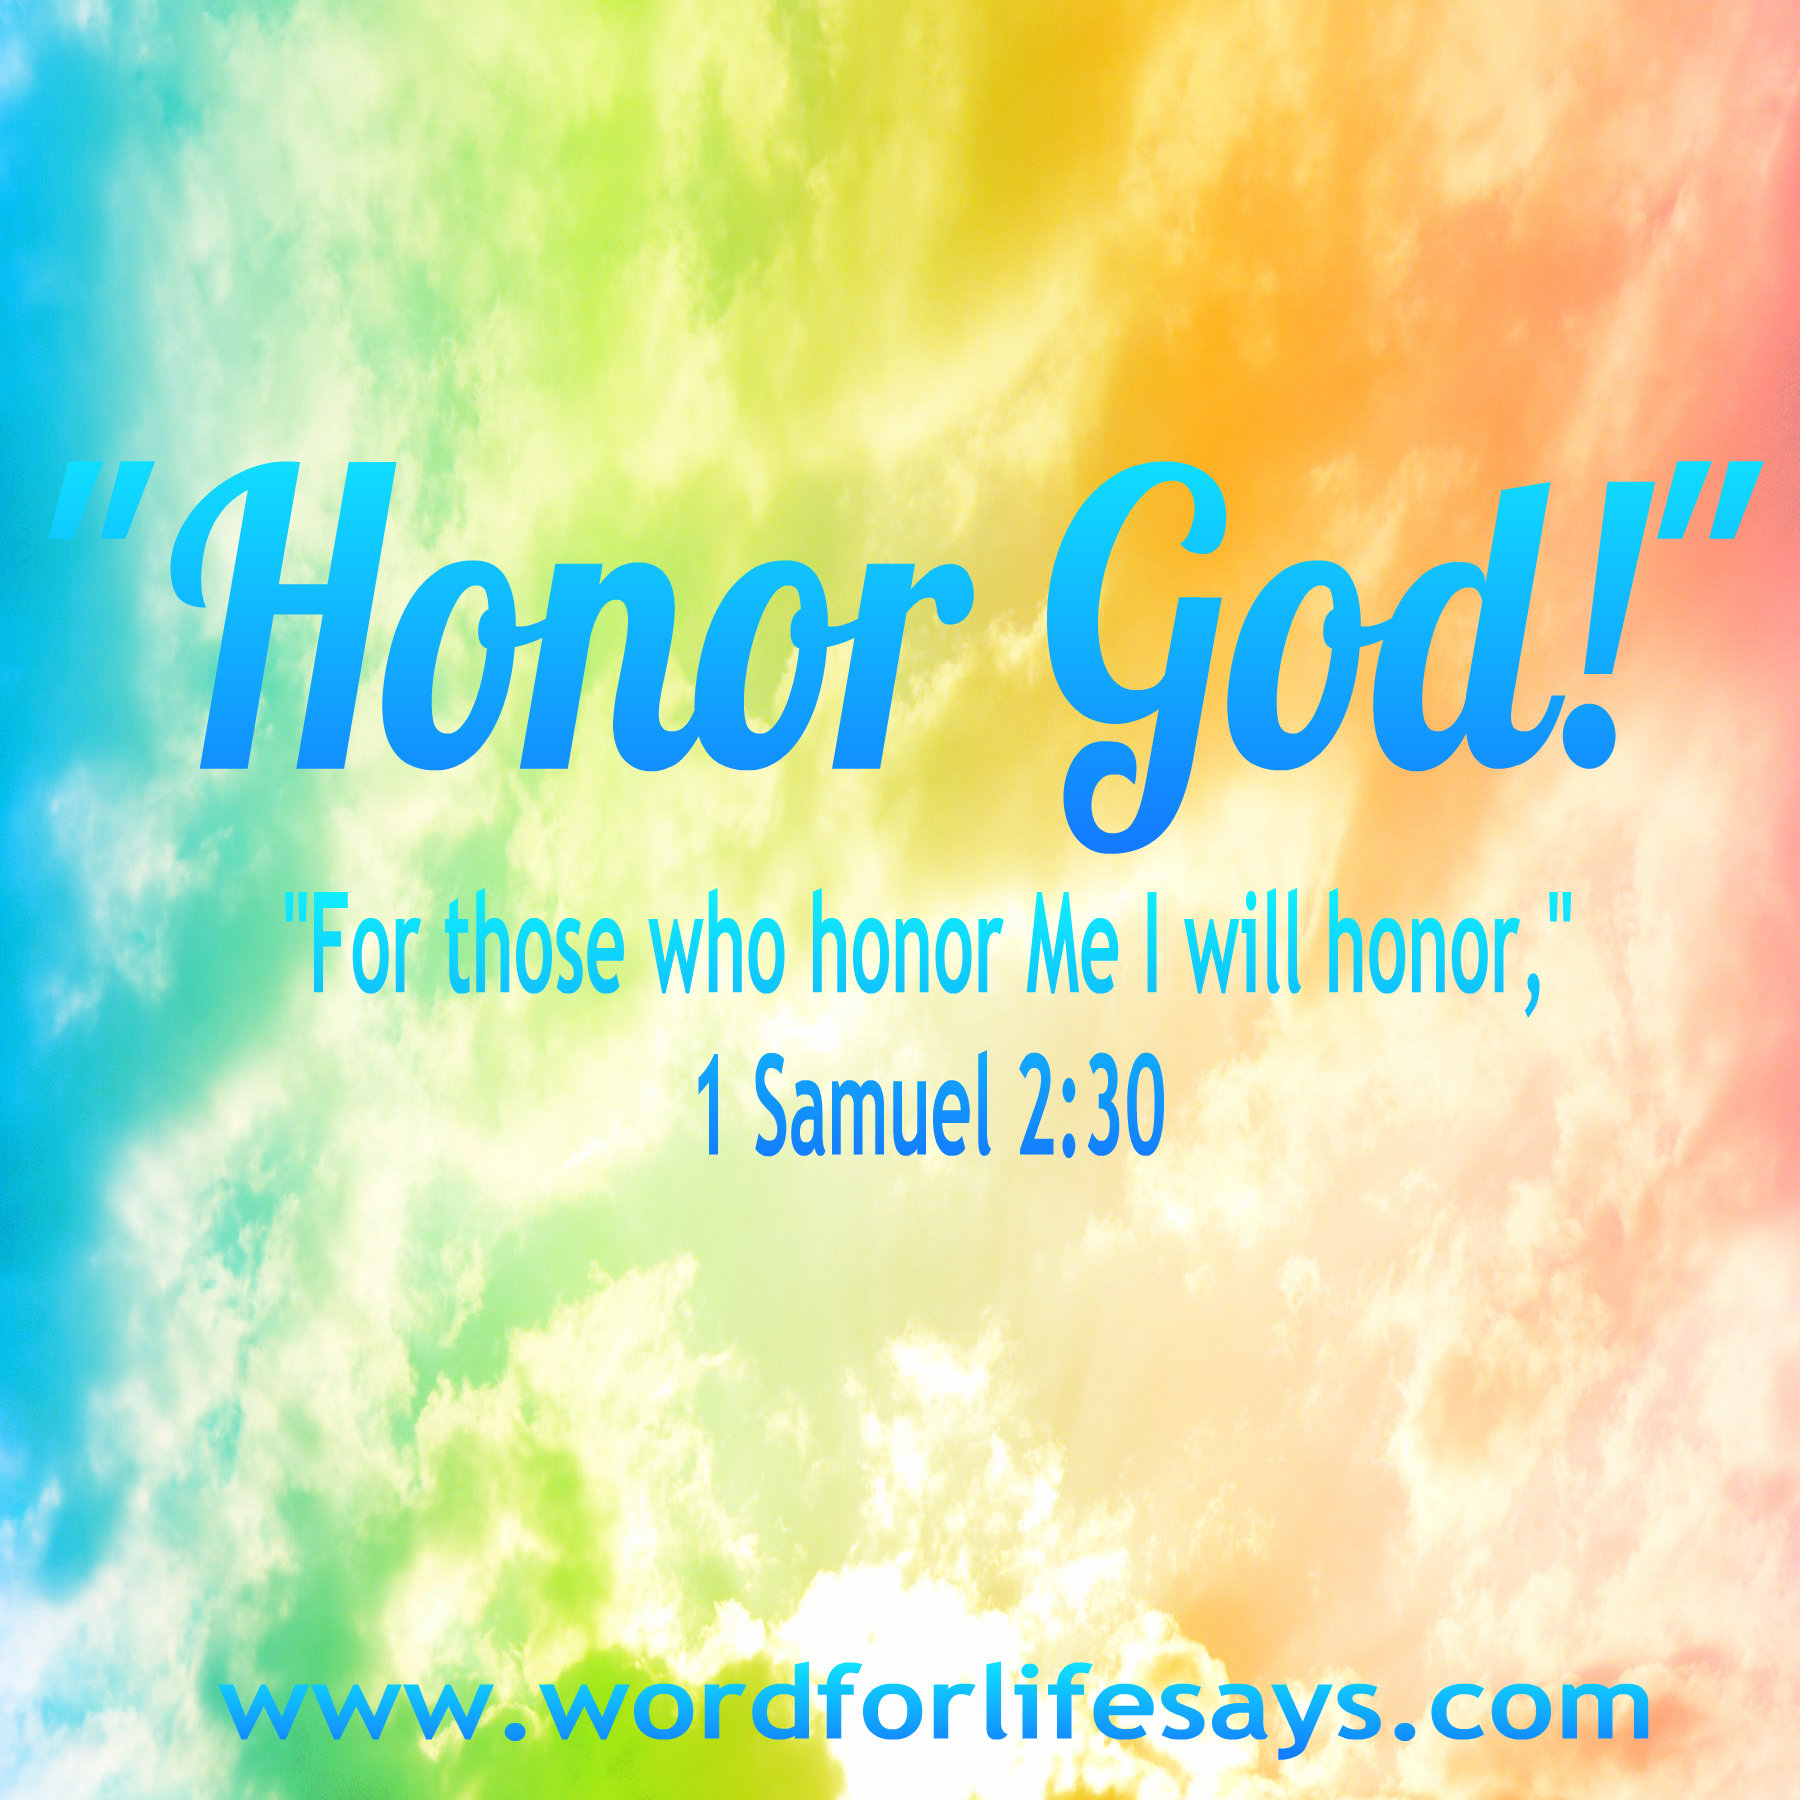 honor-god-001.jpg